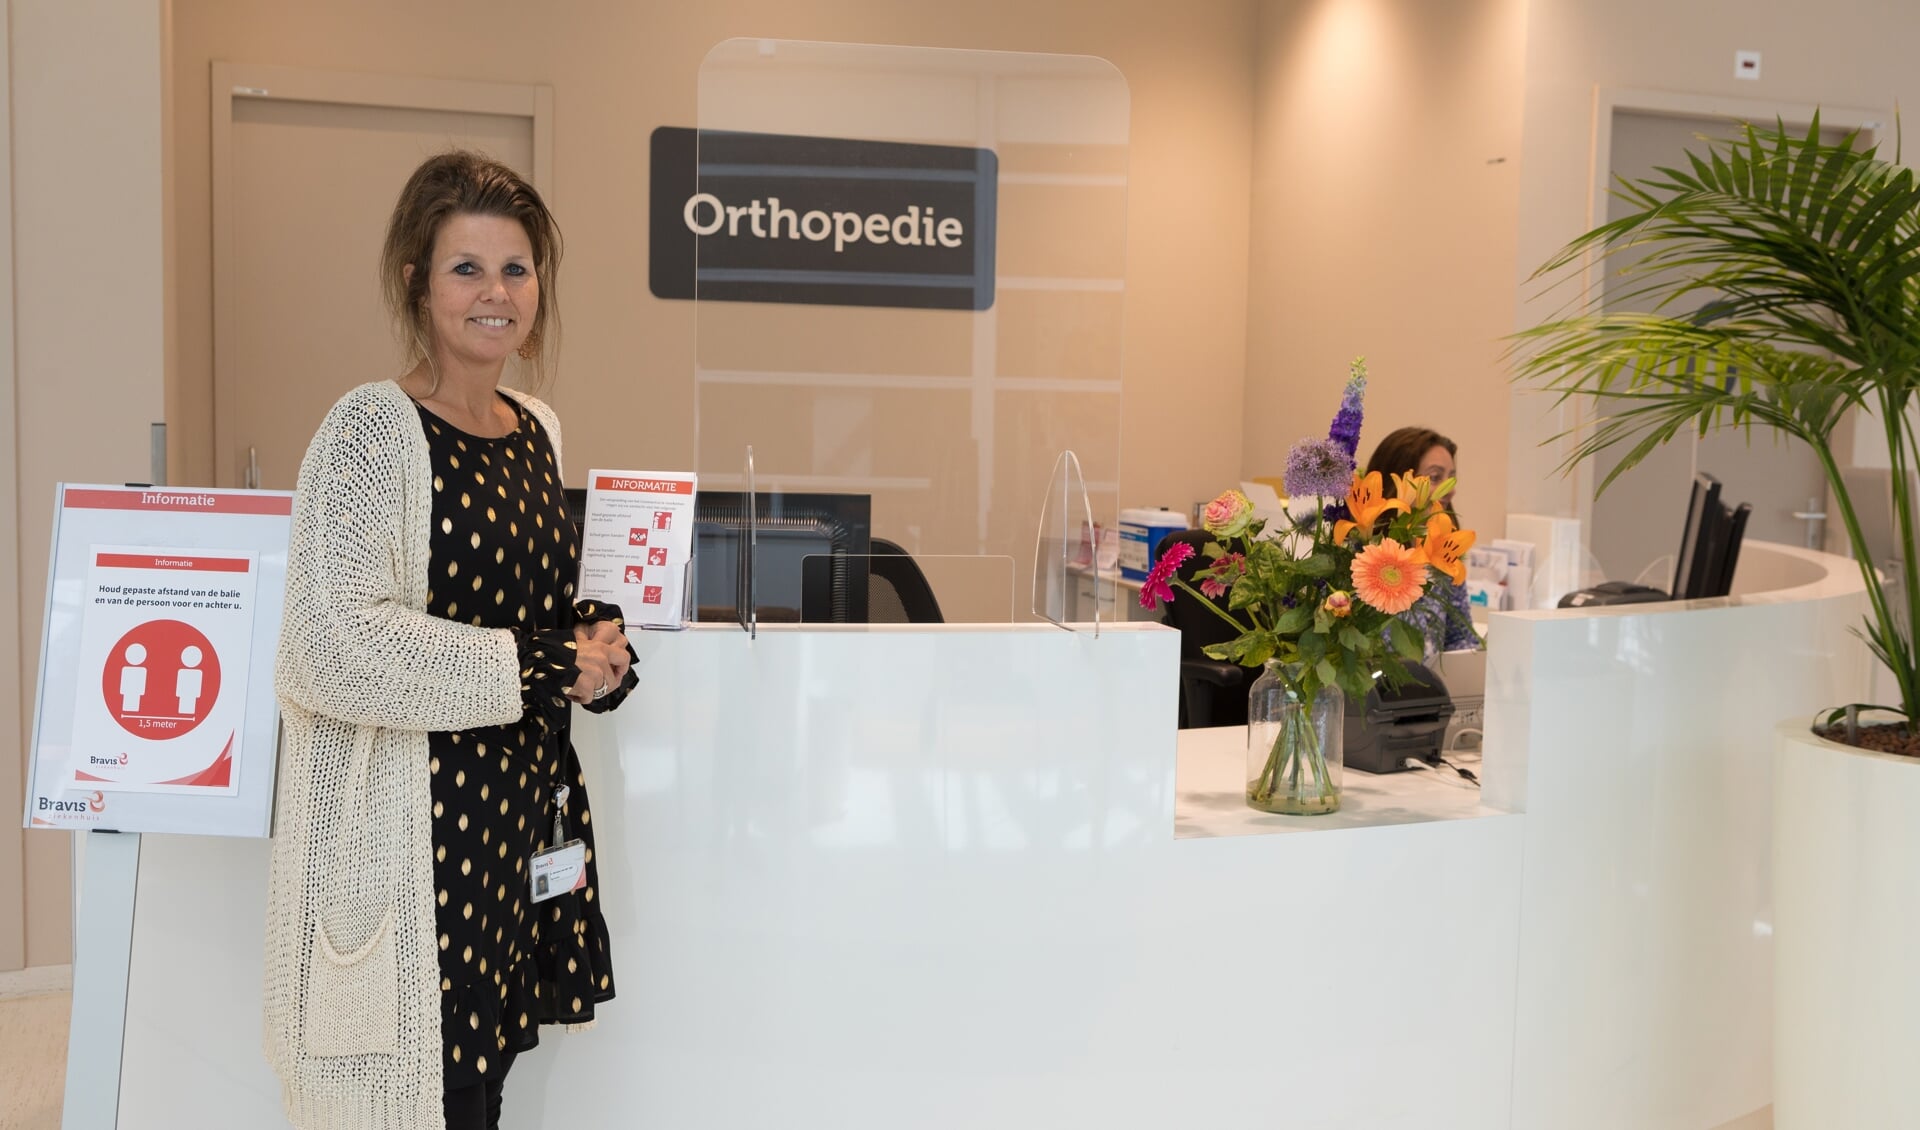 Teamleider Miriam van der Jagt van Orthopedie is blij dat ondanks de coronacrisis het persoonlijk contact met de patiënt is gebleven.

